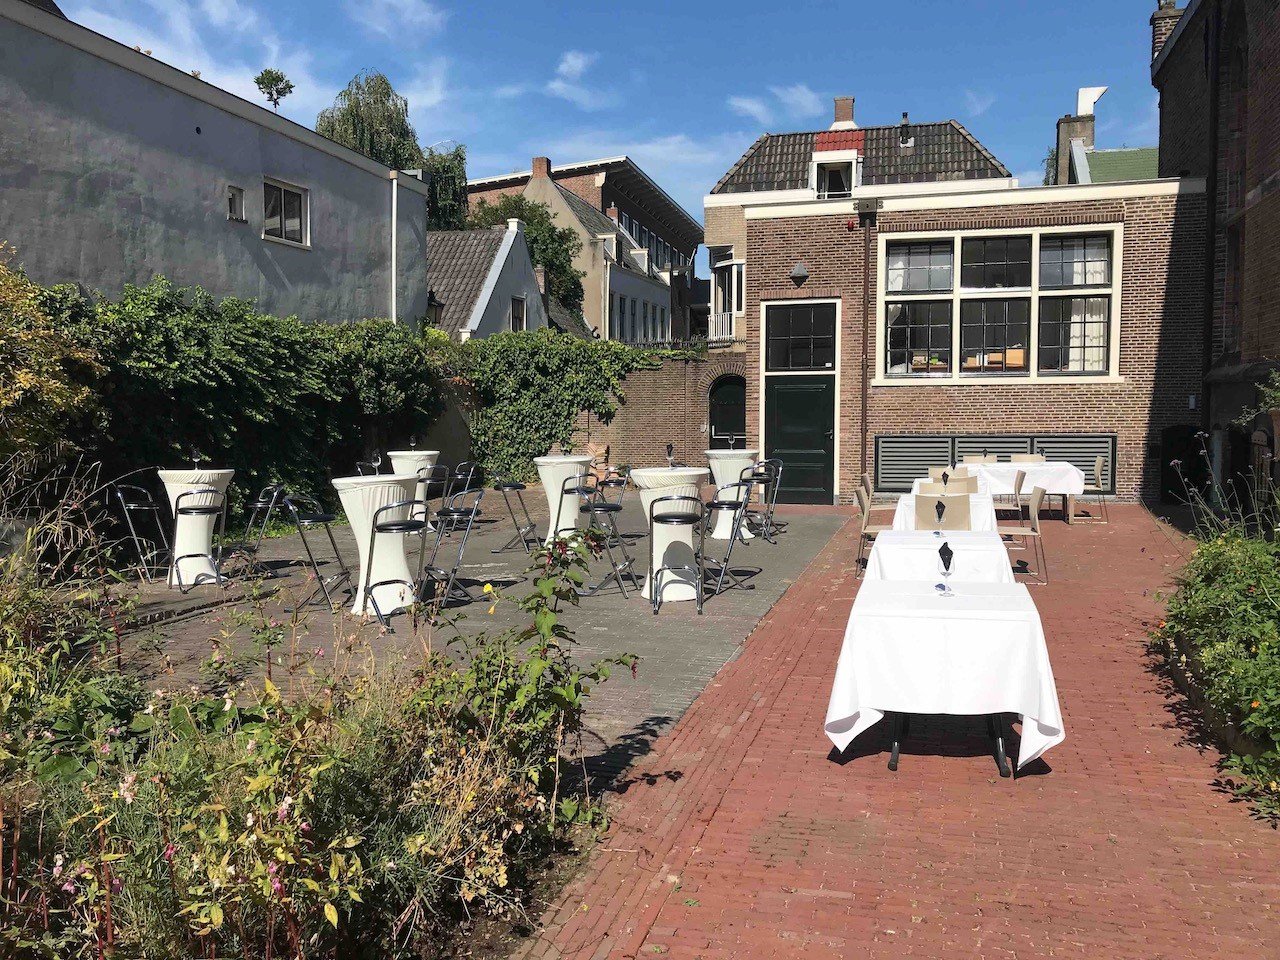 Besloten binnentuin met bartafels · Leeuwenbergh in centrum Utrecht 